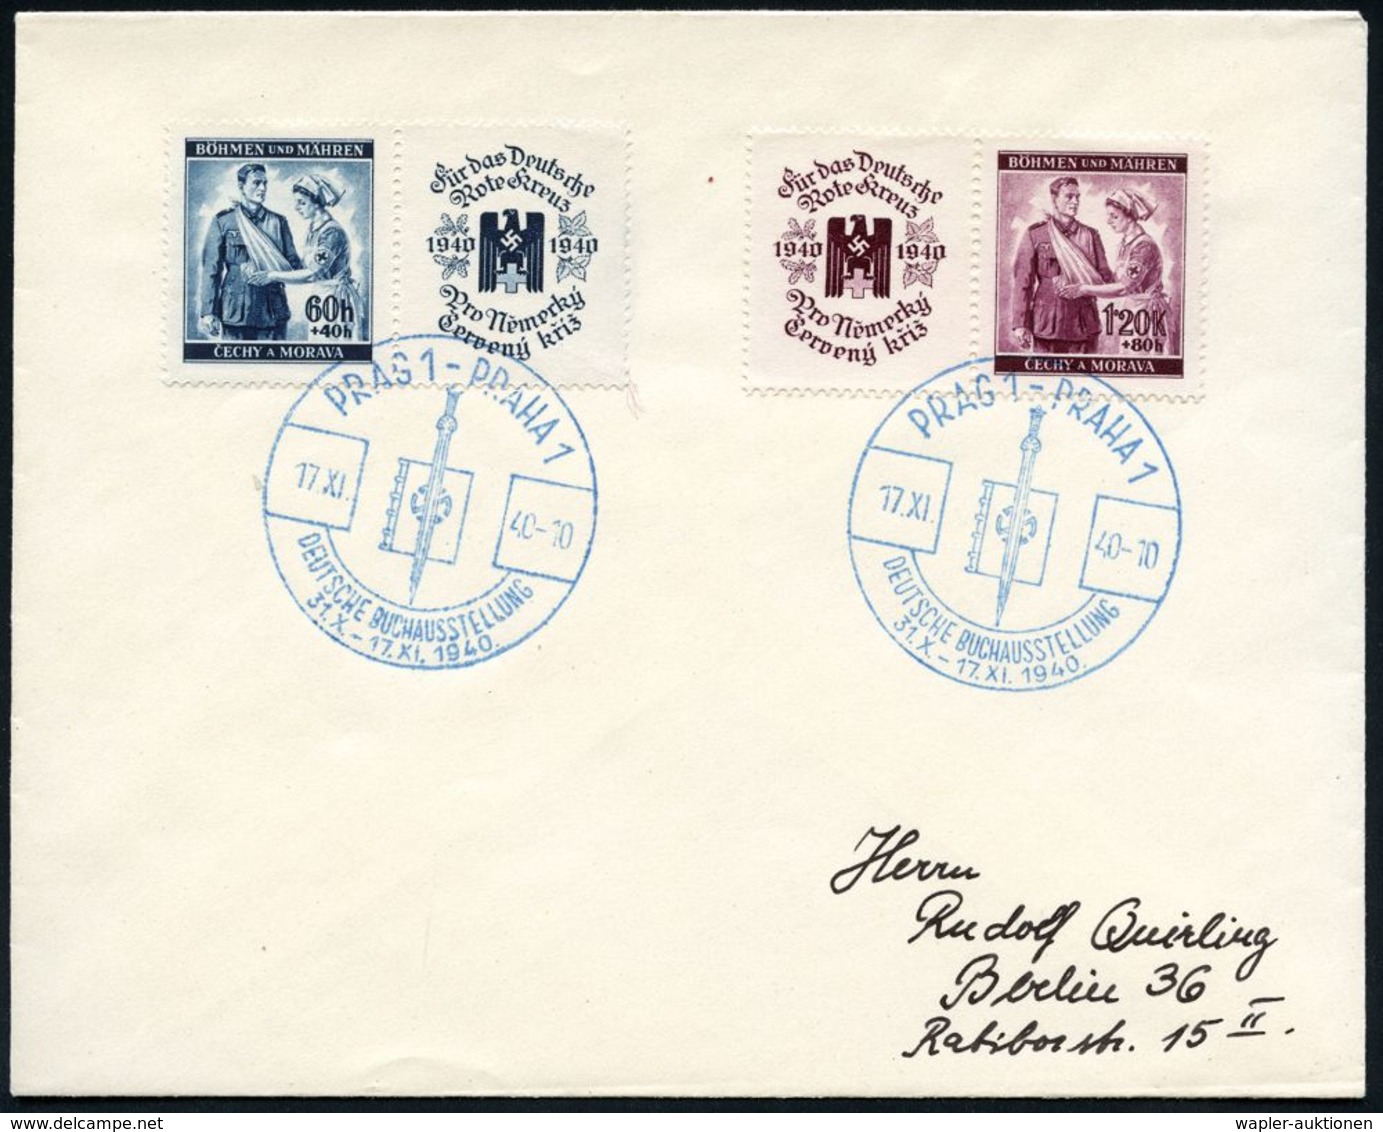 GERMANEN & KELTEN : BÖHMEN & MÄHREN 1940 (17.11.) Blauer SSt: PRAG 1-PRAHA 1/DT.BUCHAUSST (Foliant M.Hakenkreuz-Rune U.  - Archéologie